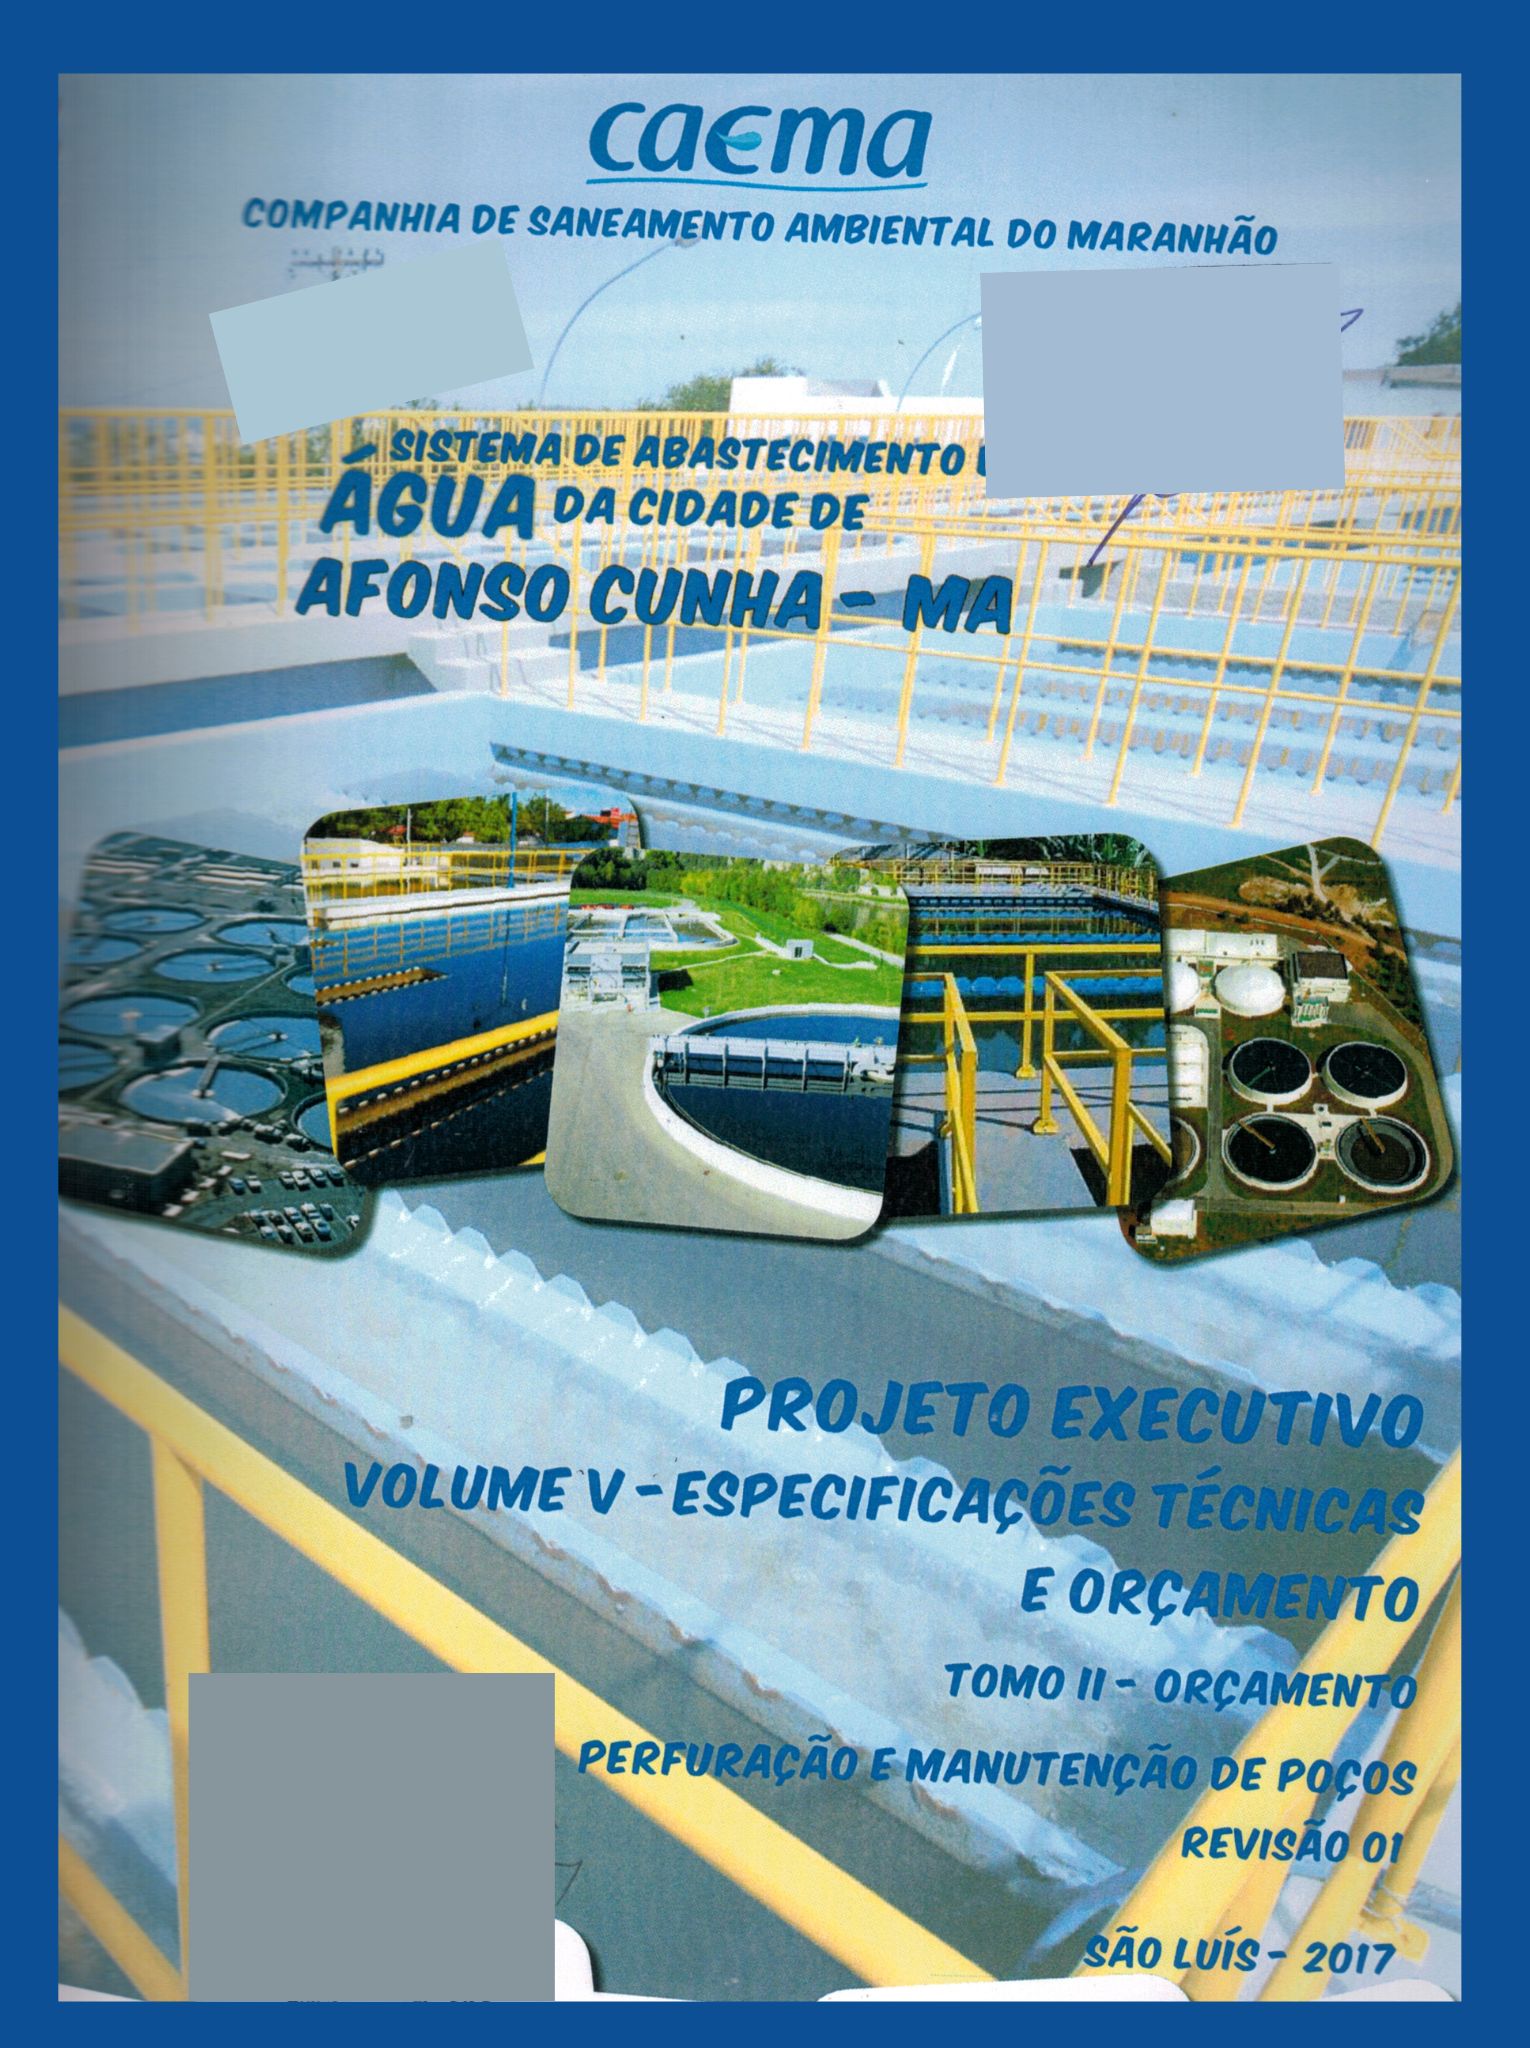 Imagem da capa do Projeto técnico com informações sobre título e autoria.